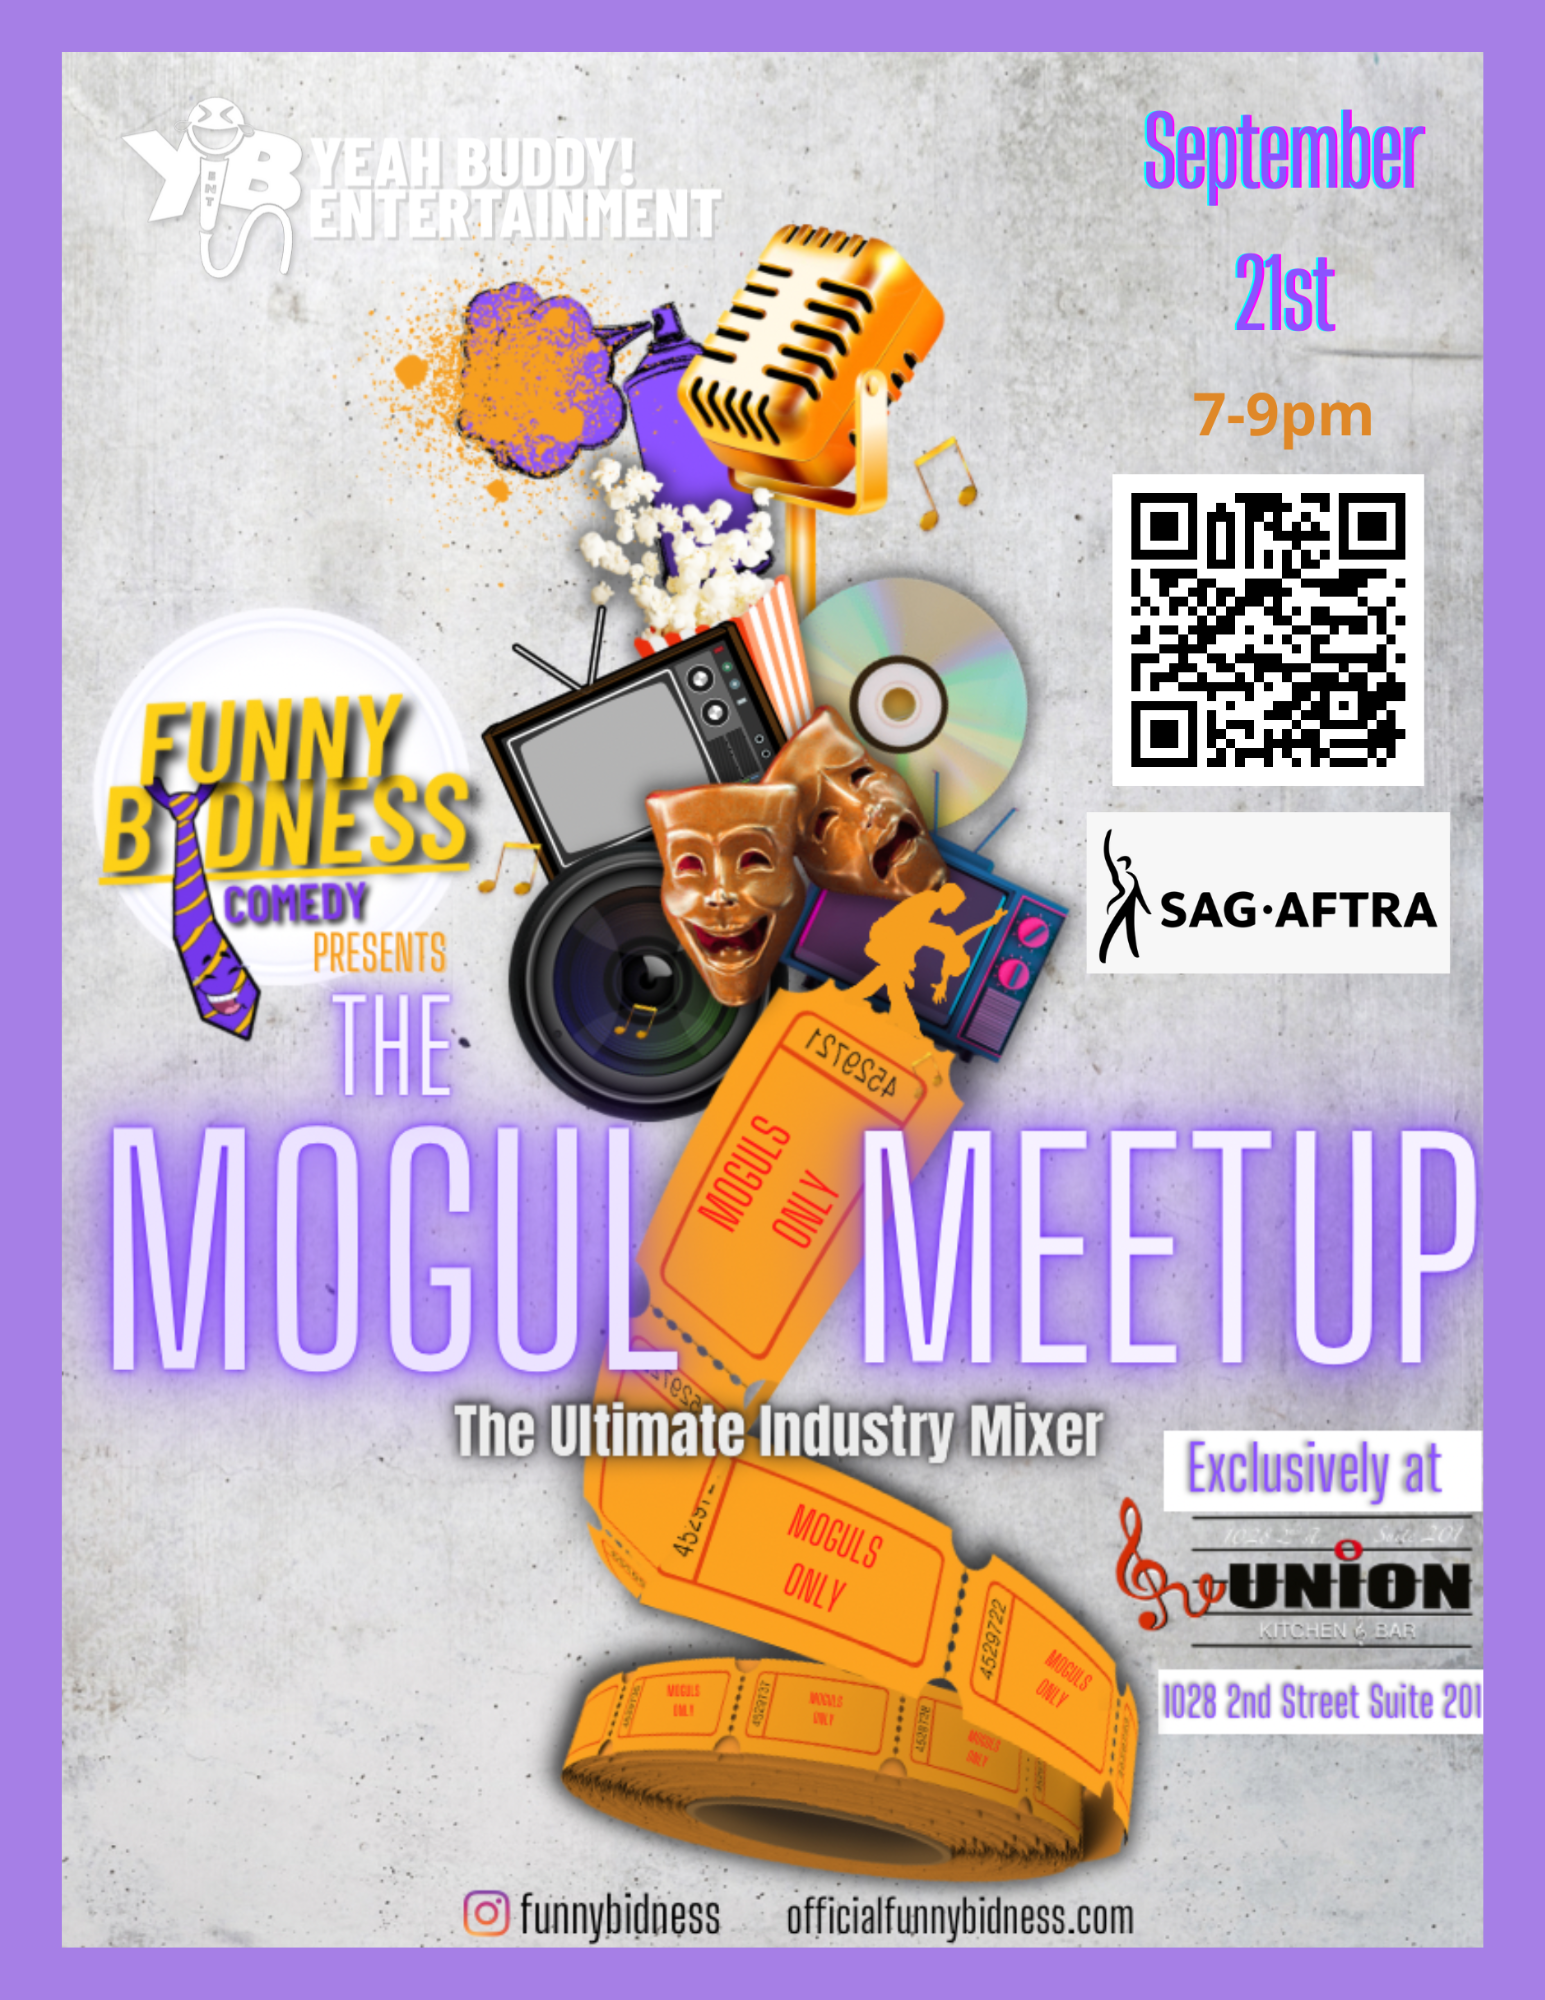 The Mogul Meet Up – Sept 21st